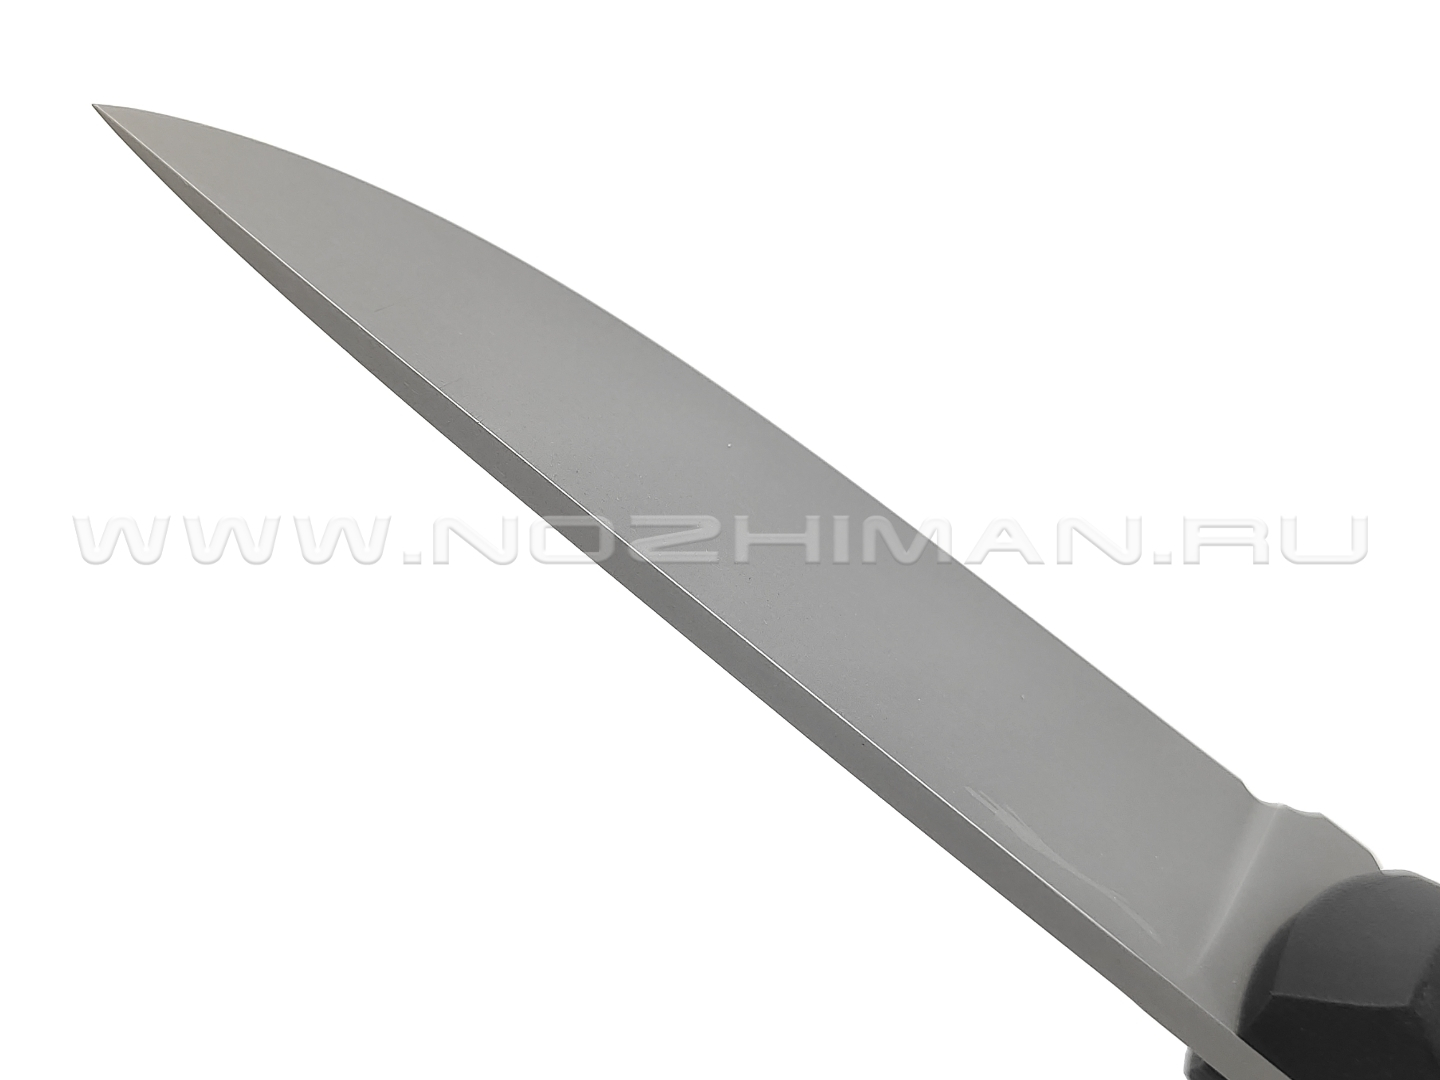 Волчий Век нож Прототип сталь N690 WA bead-blast, рукоять G10 black